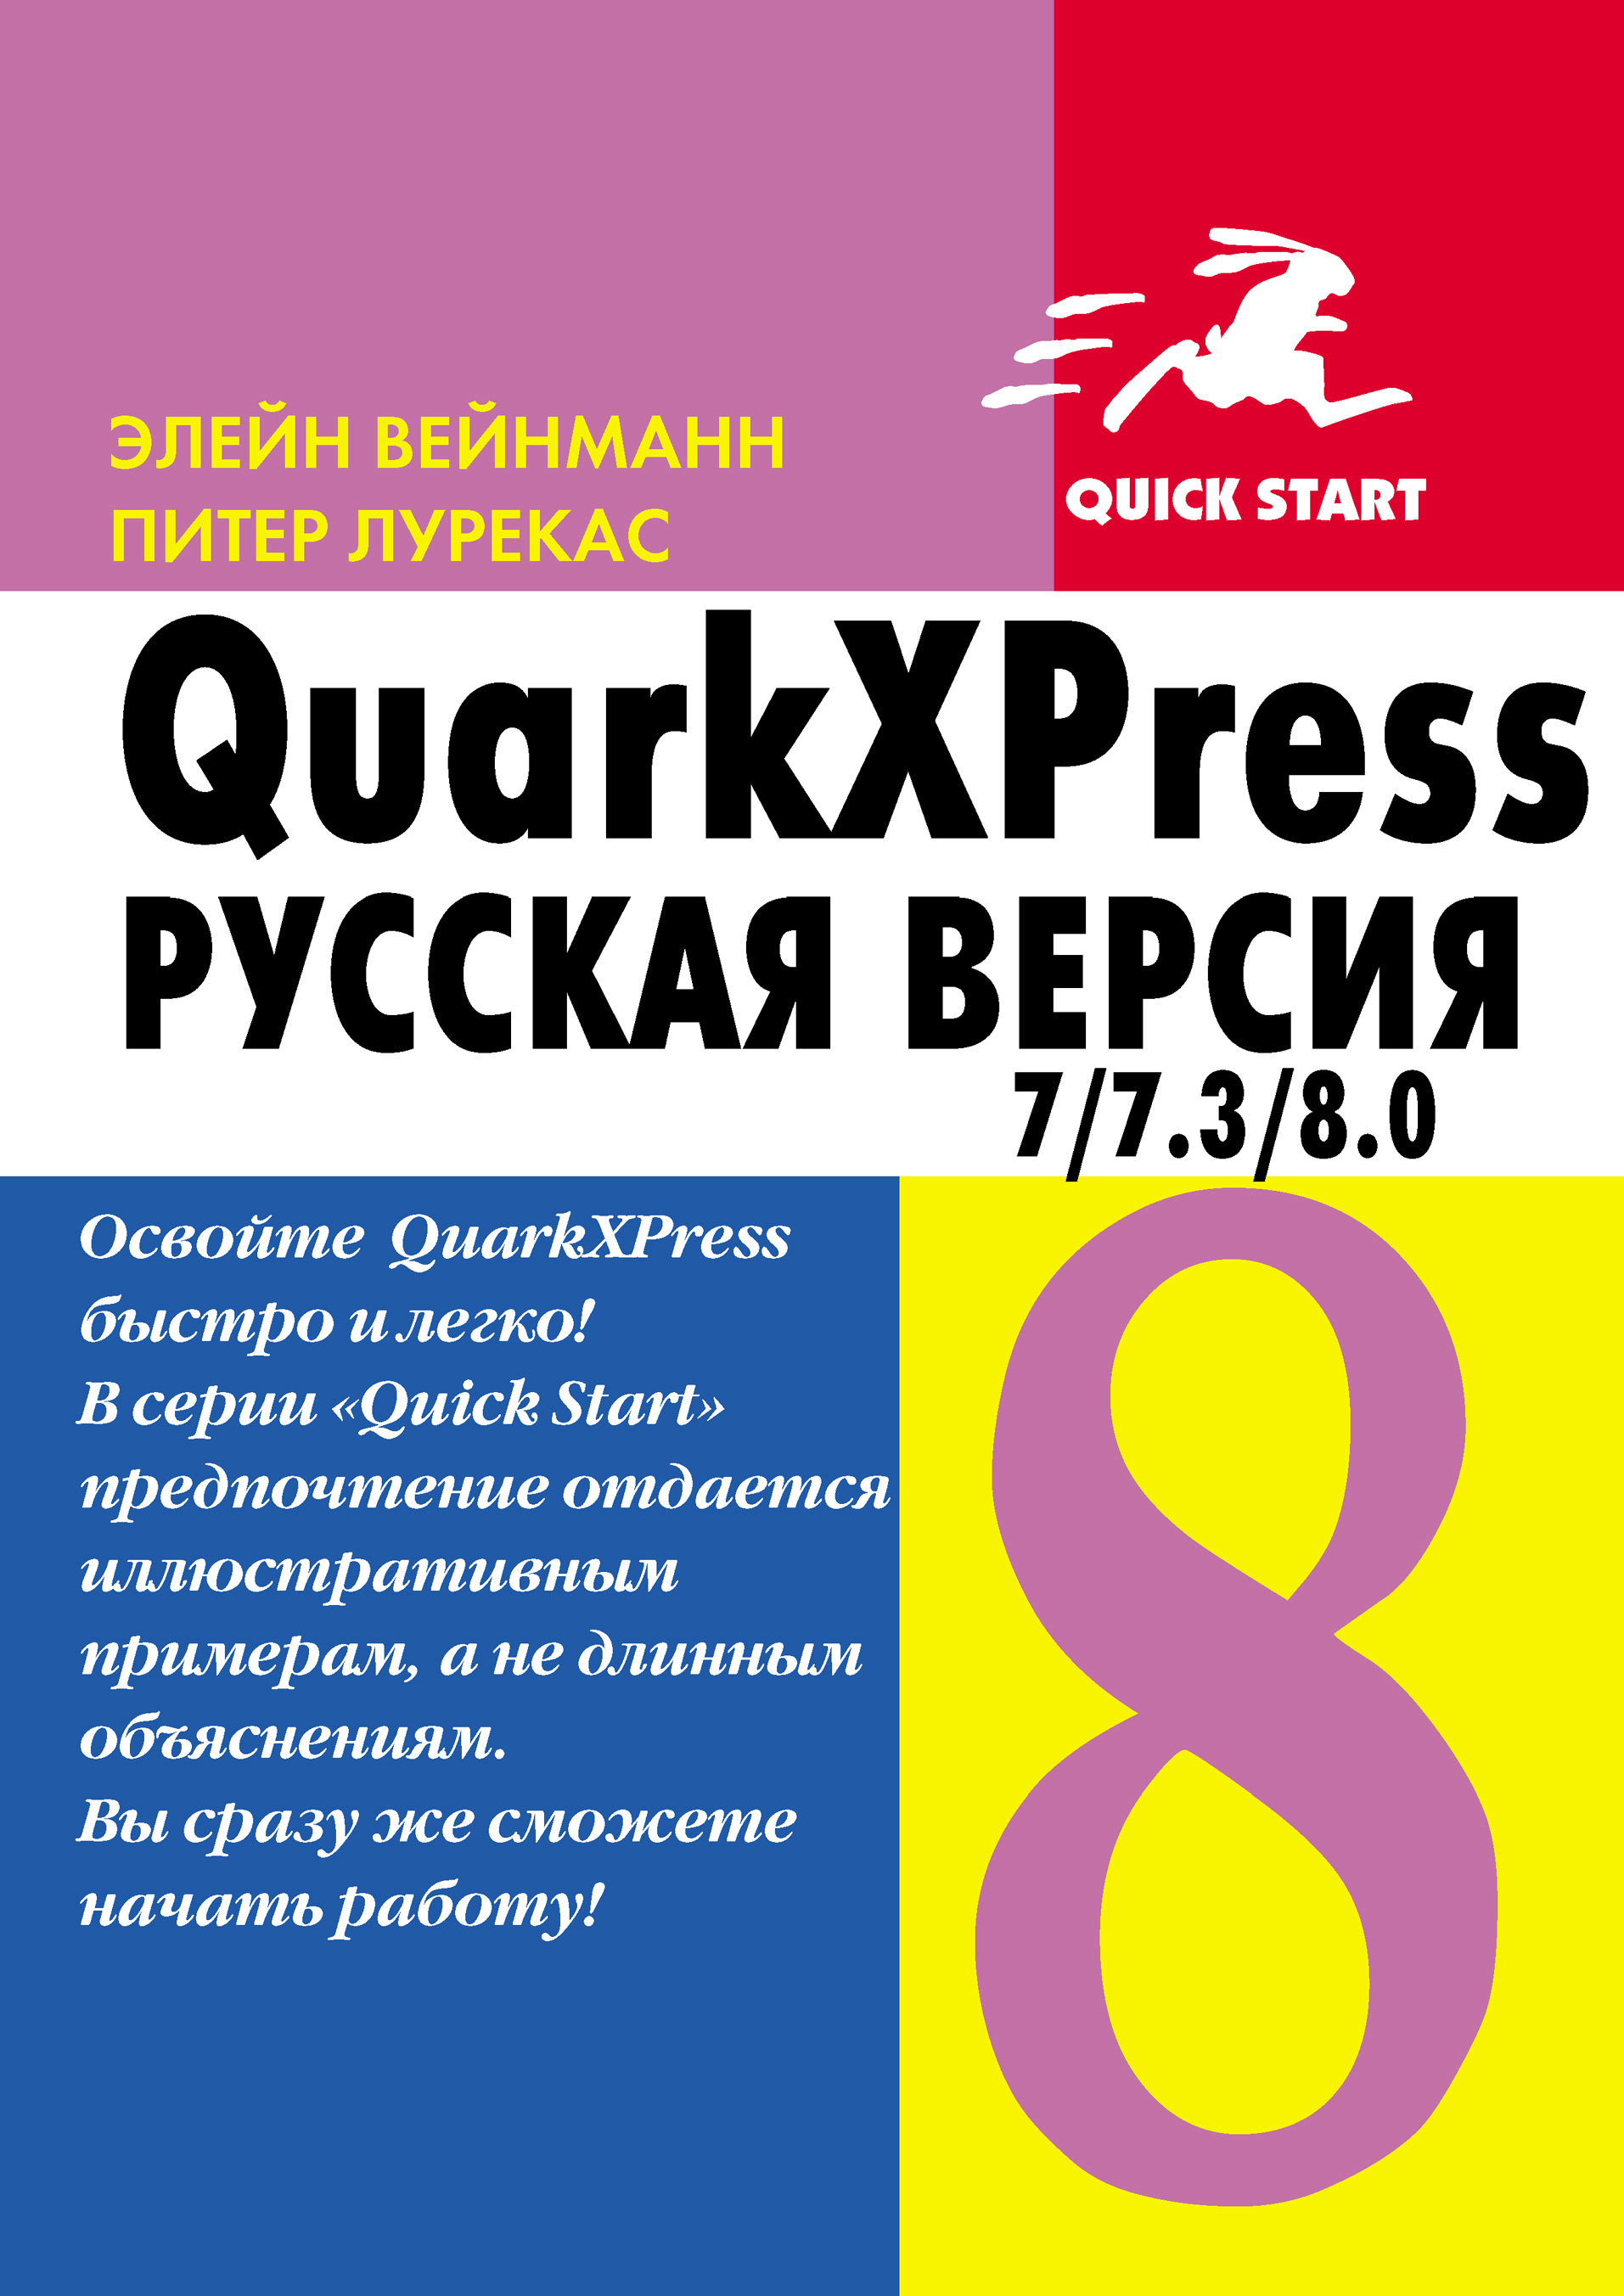 Книга  QuarkXpress 7.0/7.3/8.0 для Windows и Мacintosh созданная Элейн Вейнманн, Питер Лурекас, А. И. Осипов может относится к жанру зарубежная компьютерная литература, издательское дело, программы. Стоимость электронной книги QuarkXpress 7.0/7.3/8.0 для Windows и Мacintosh с идентификатором 6656471 составляет 279.00 руб.